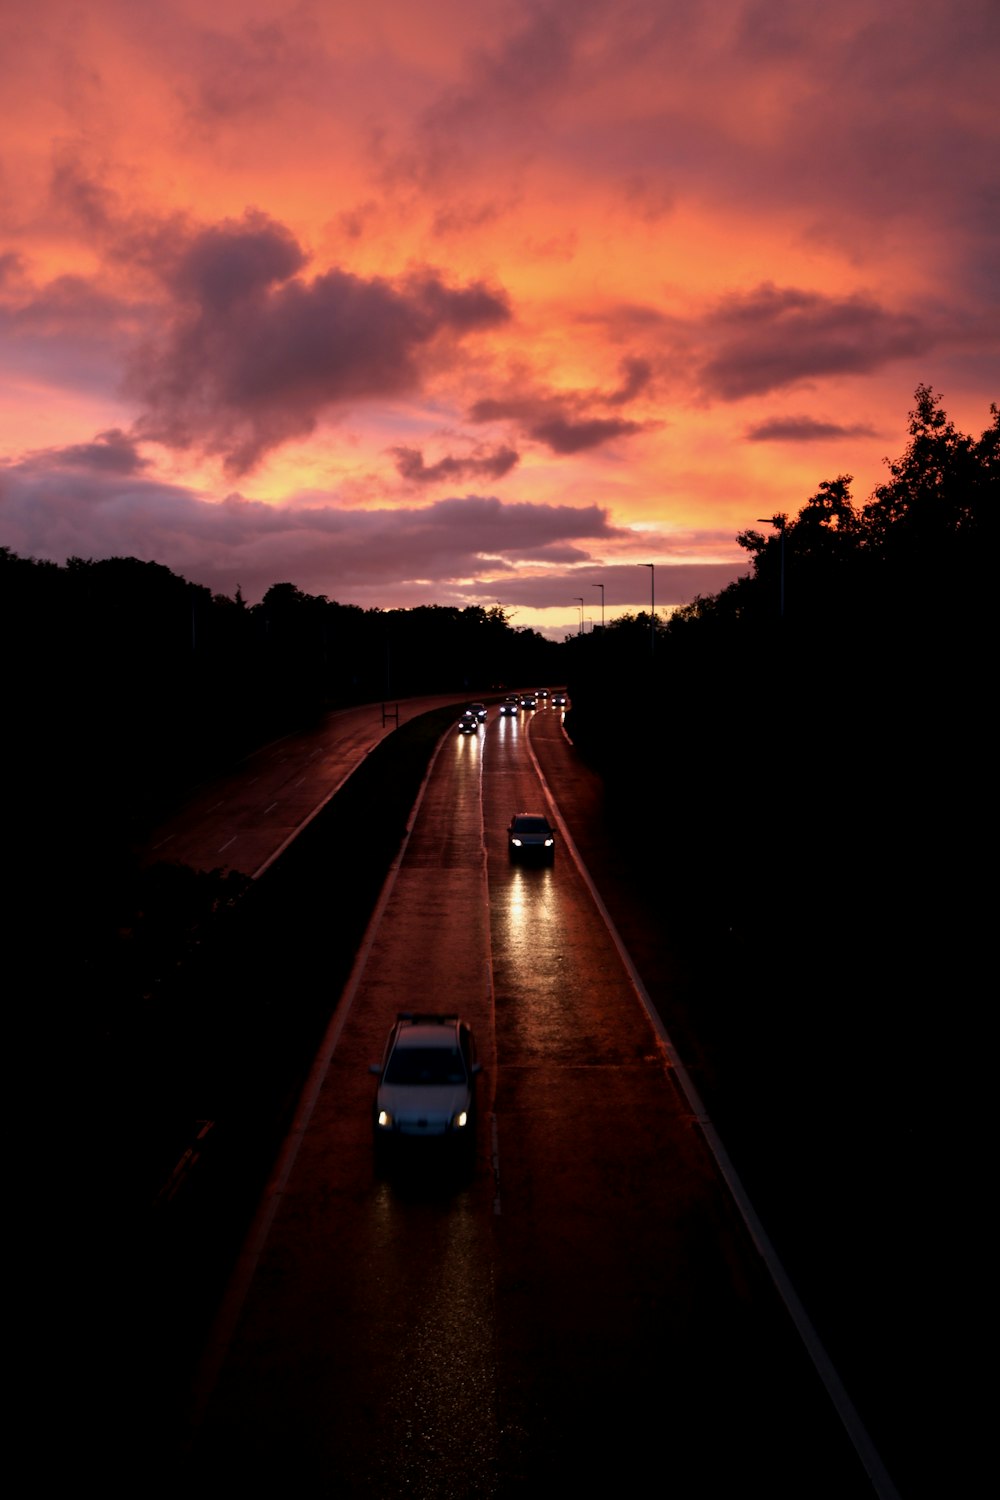 Varios vehículos en la carretera durante la puesta de sol